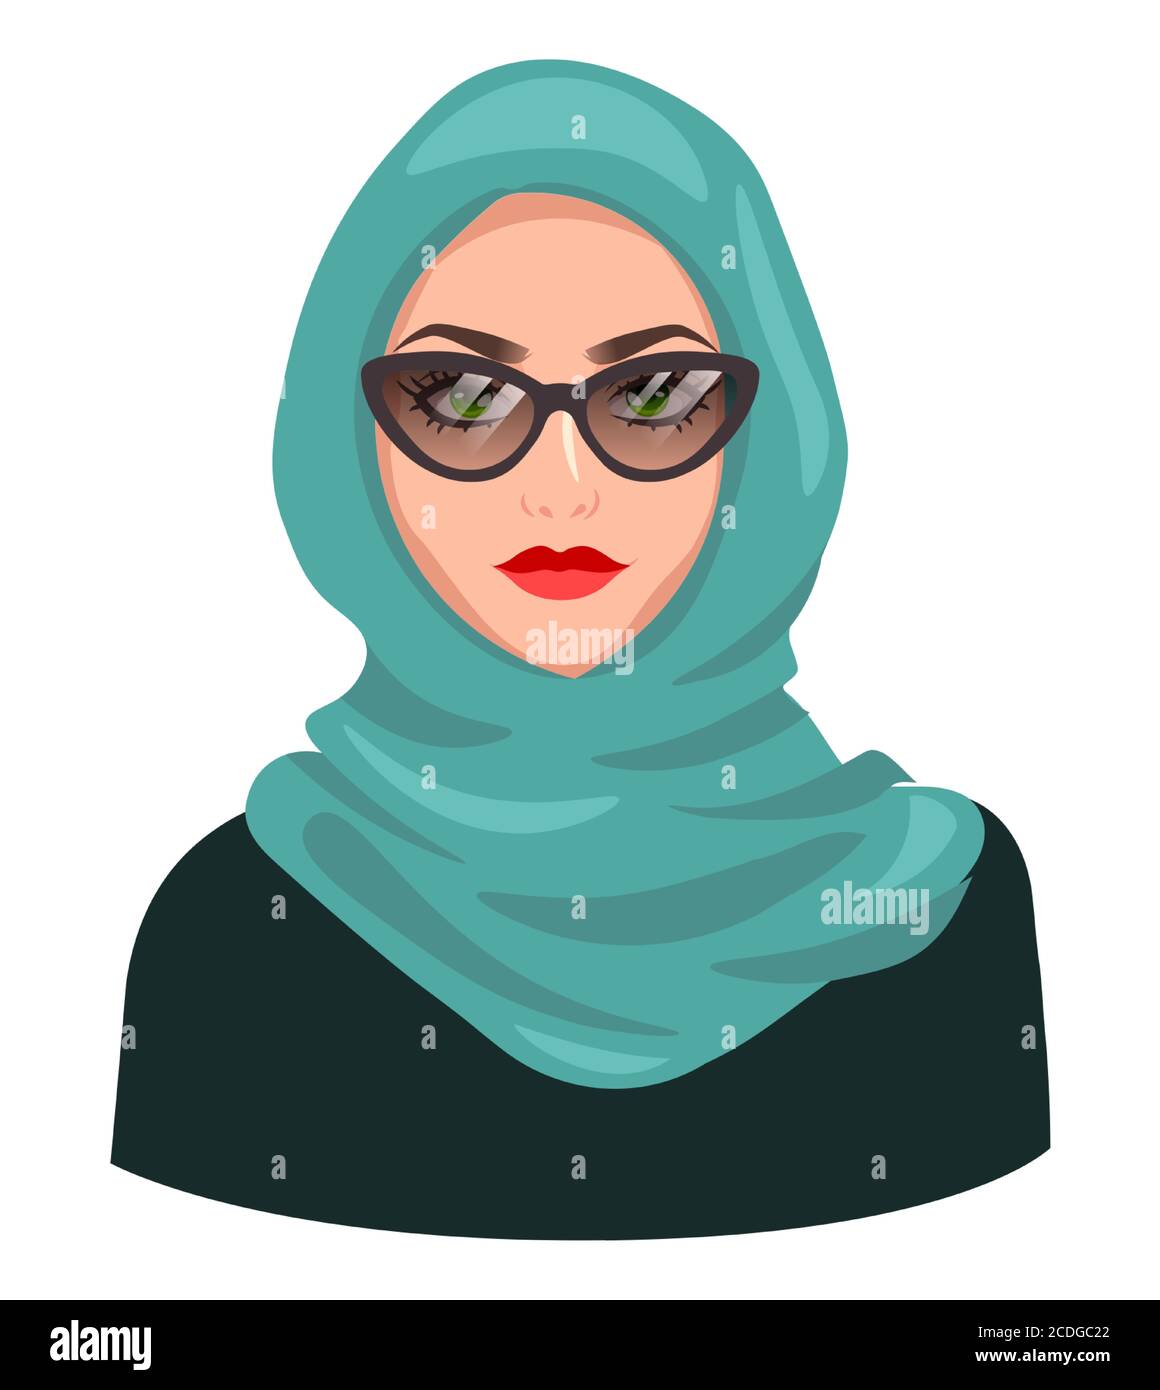 Muslimische Frau Avatar, isoliert auf weiß. Junge arabische Mädchen trägt Hijab und Sonnenbrille. Cartoon weibliche Porträt, flache Vektor-Illustration Stock Vektor